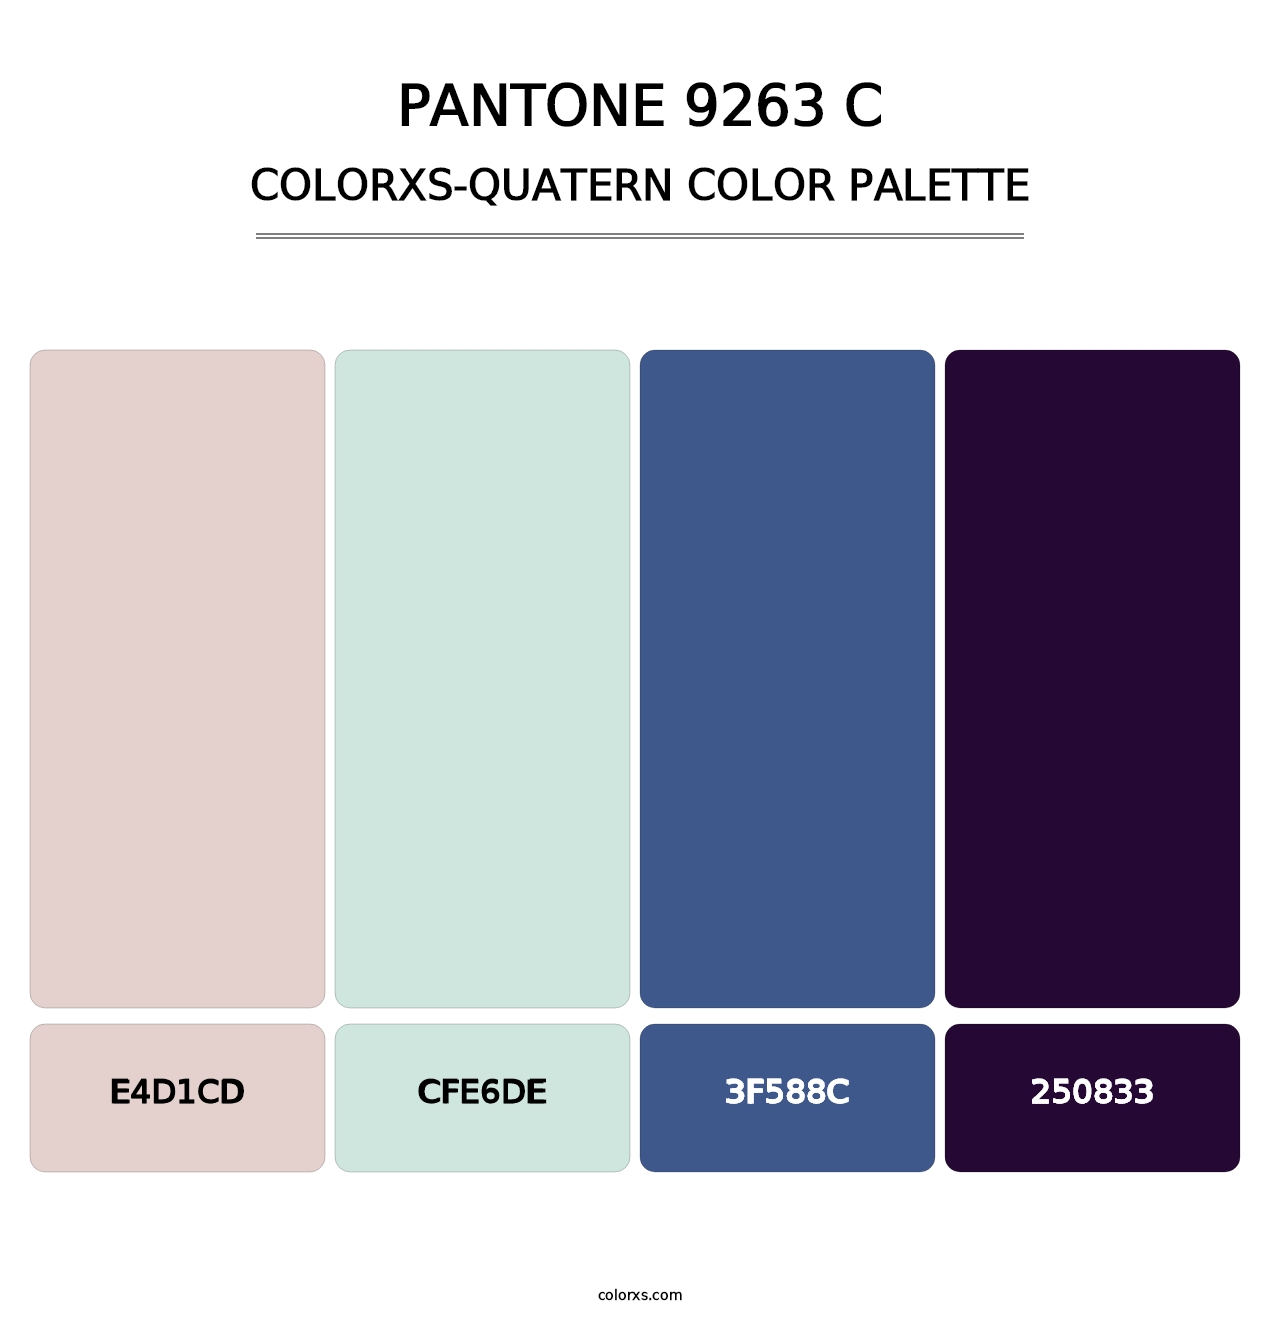 PANTONE 9263 C - Colorxs Quatern Palette